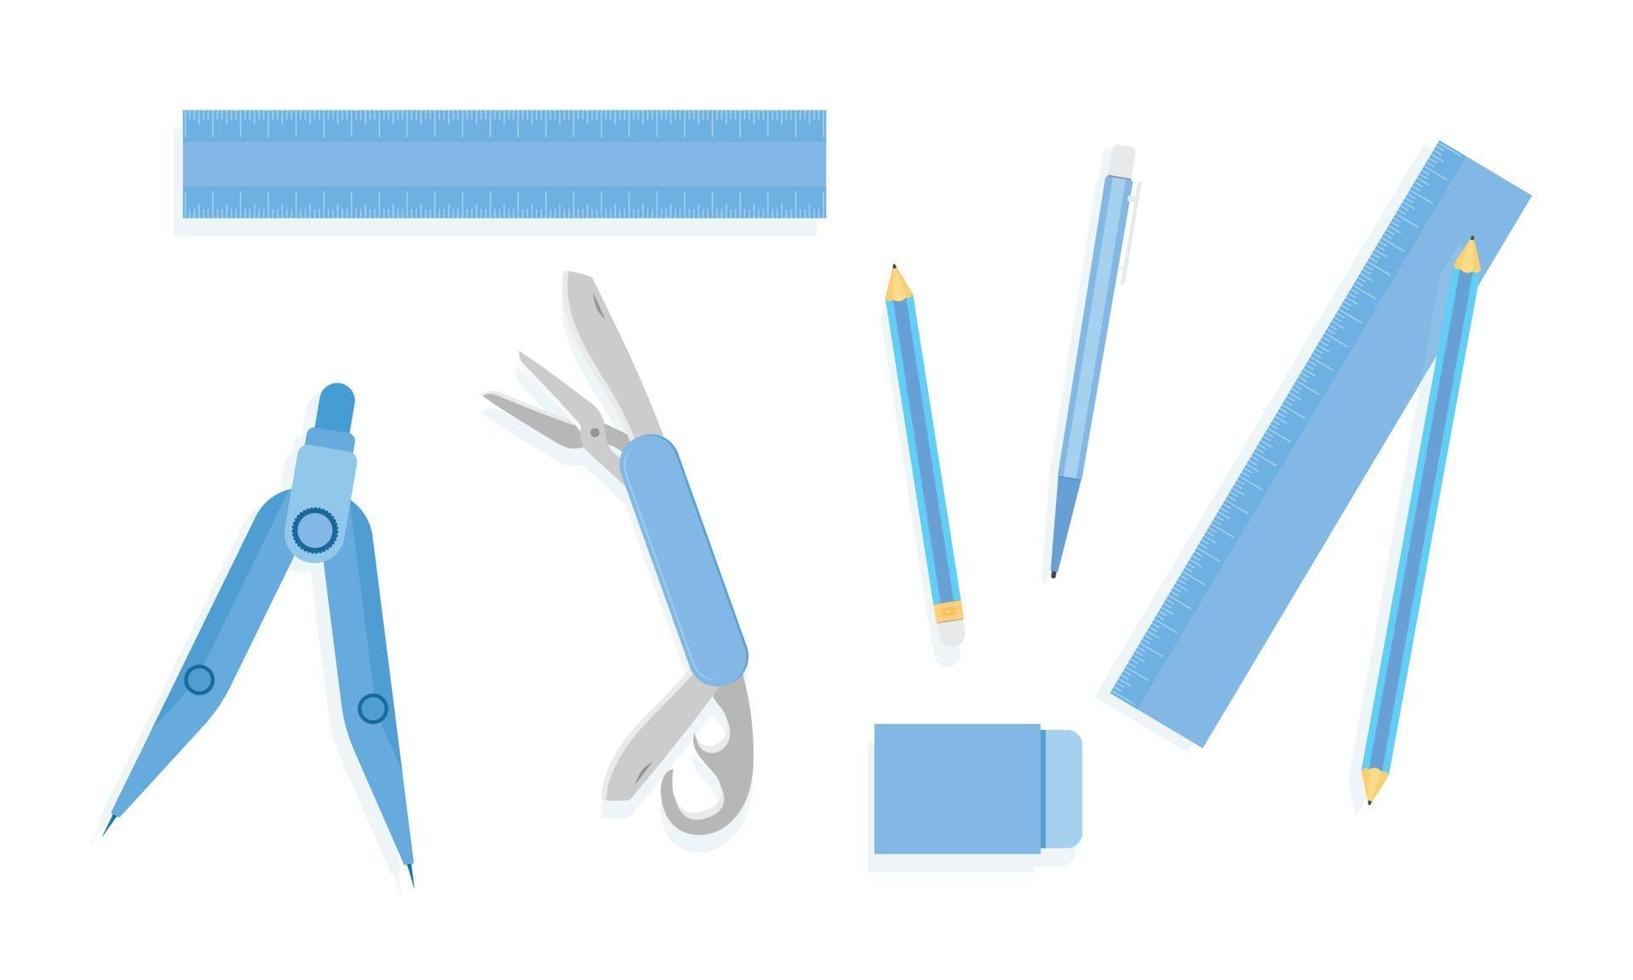 righello matita penna gomma bussola coltello tascabile cestello tono blu illustrazione vettoriale eps10